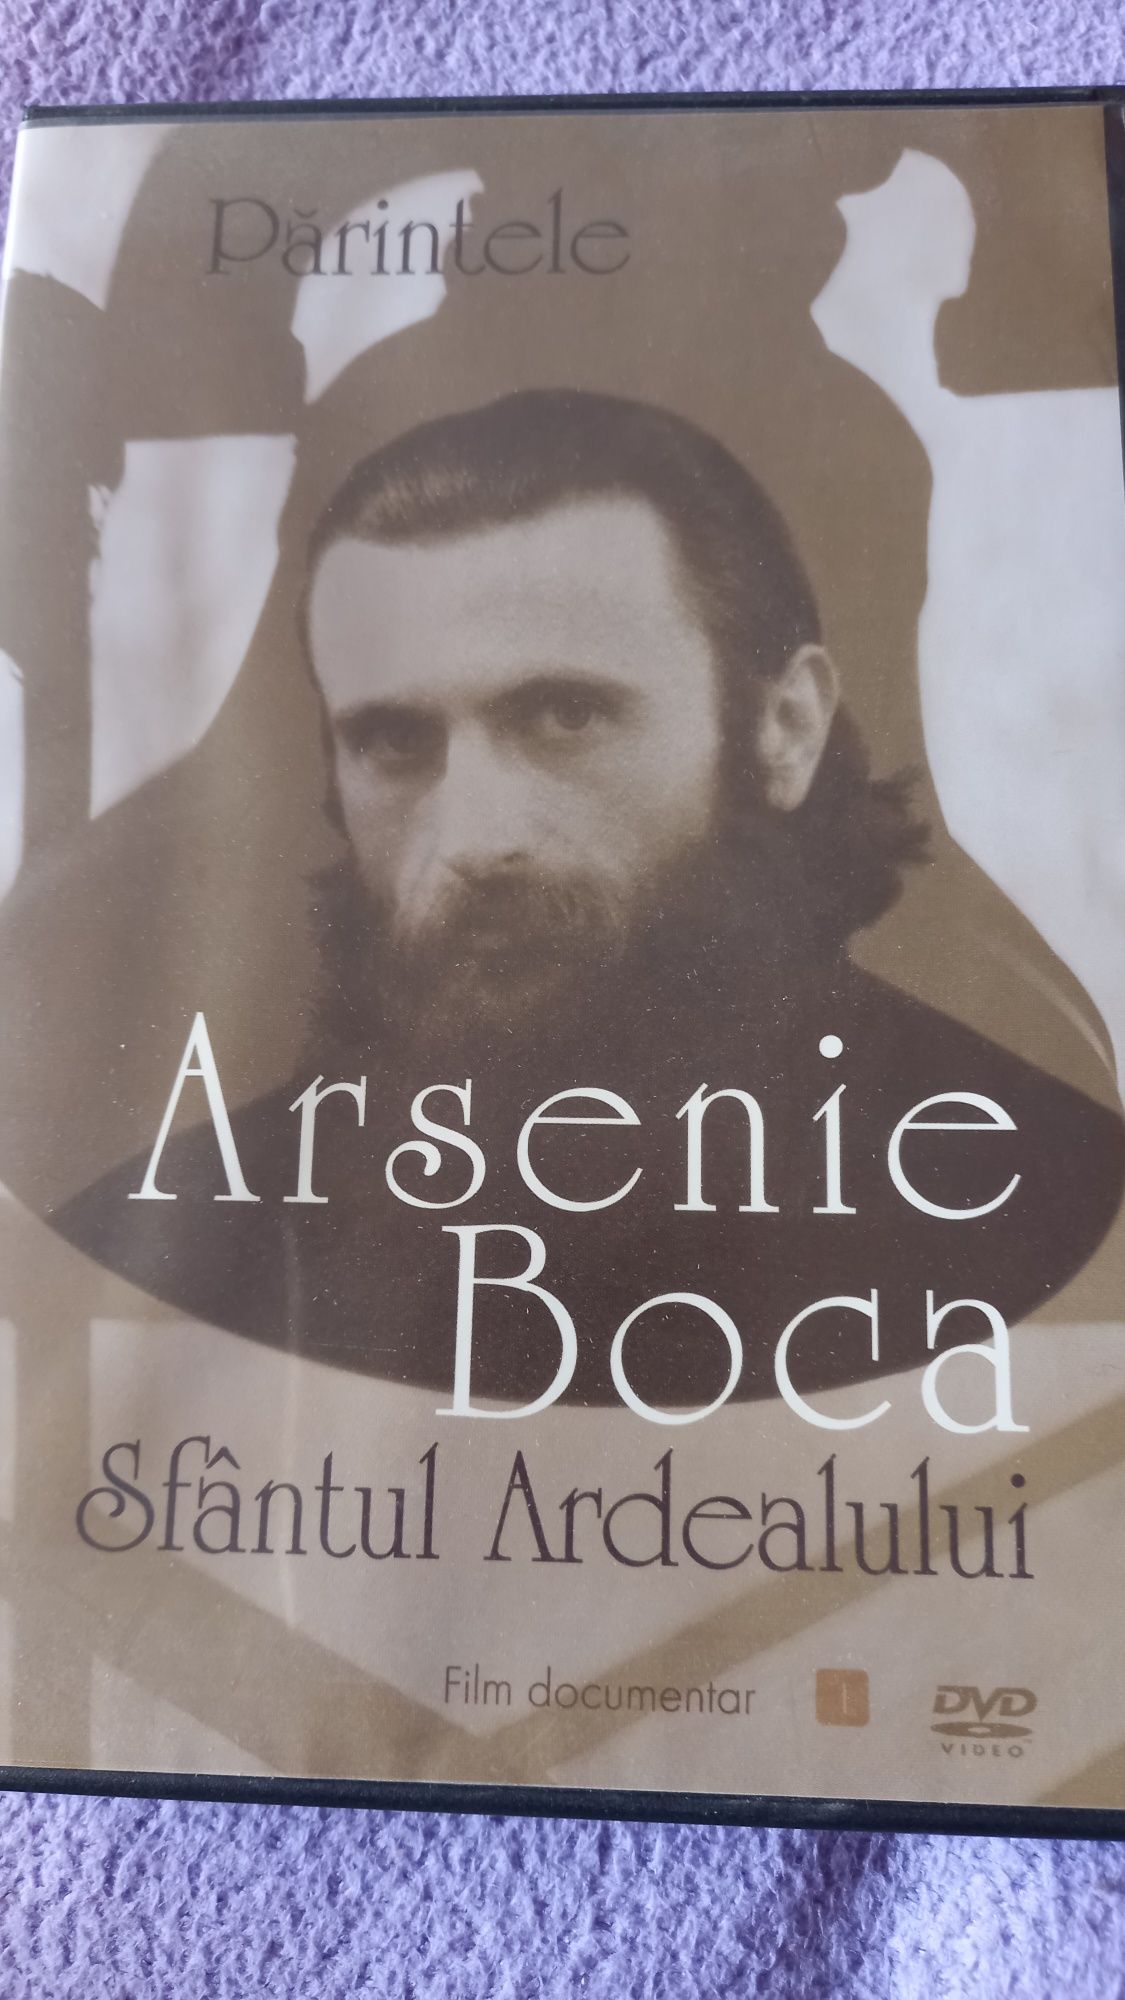 Vand DVD cu Arsenie Boca-Sfântul Ardealului